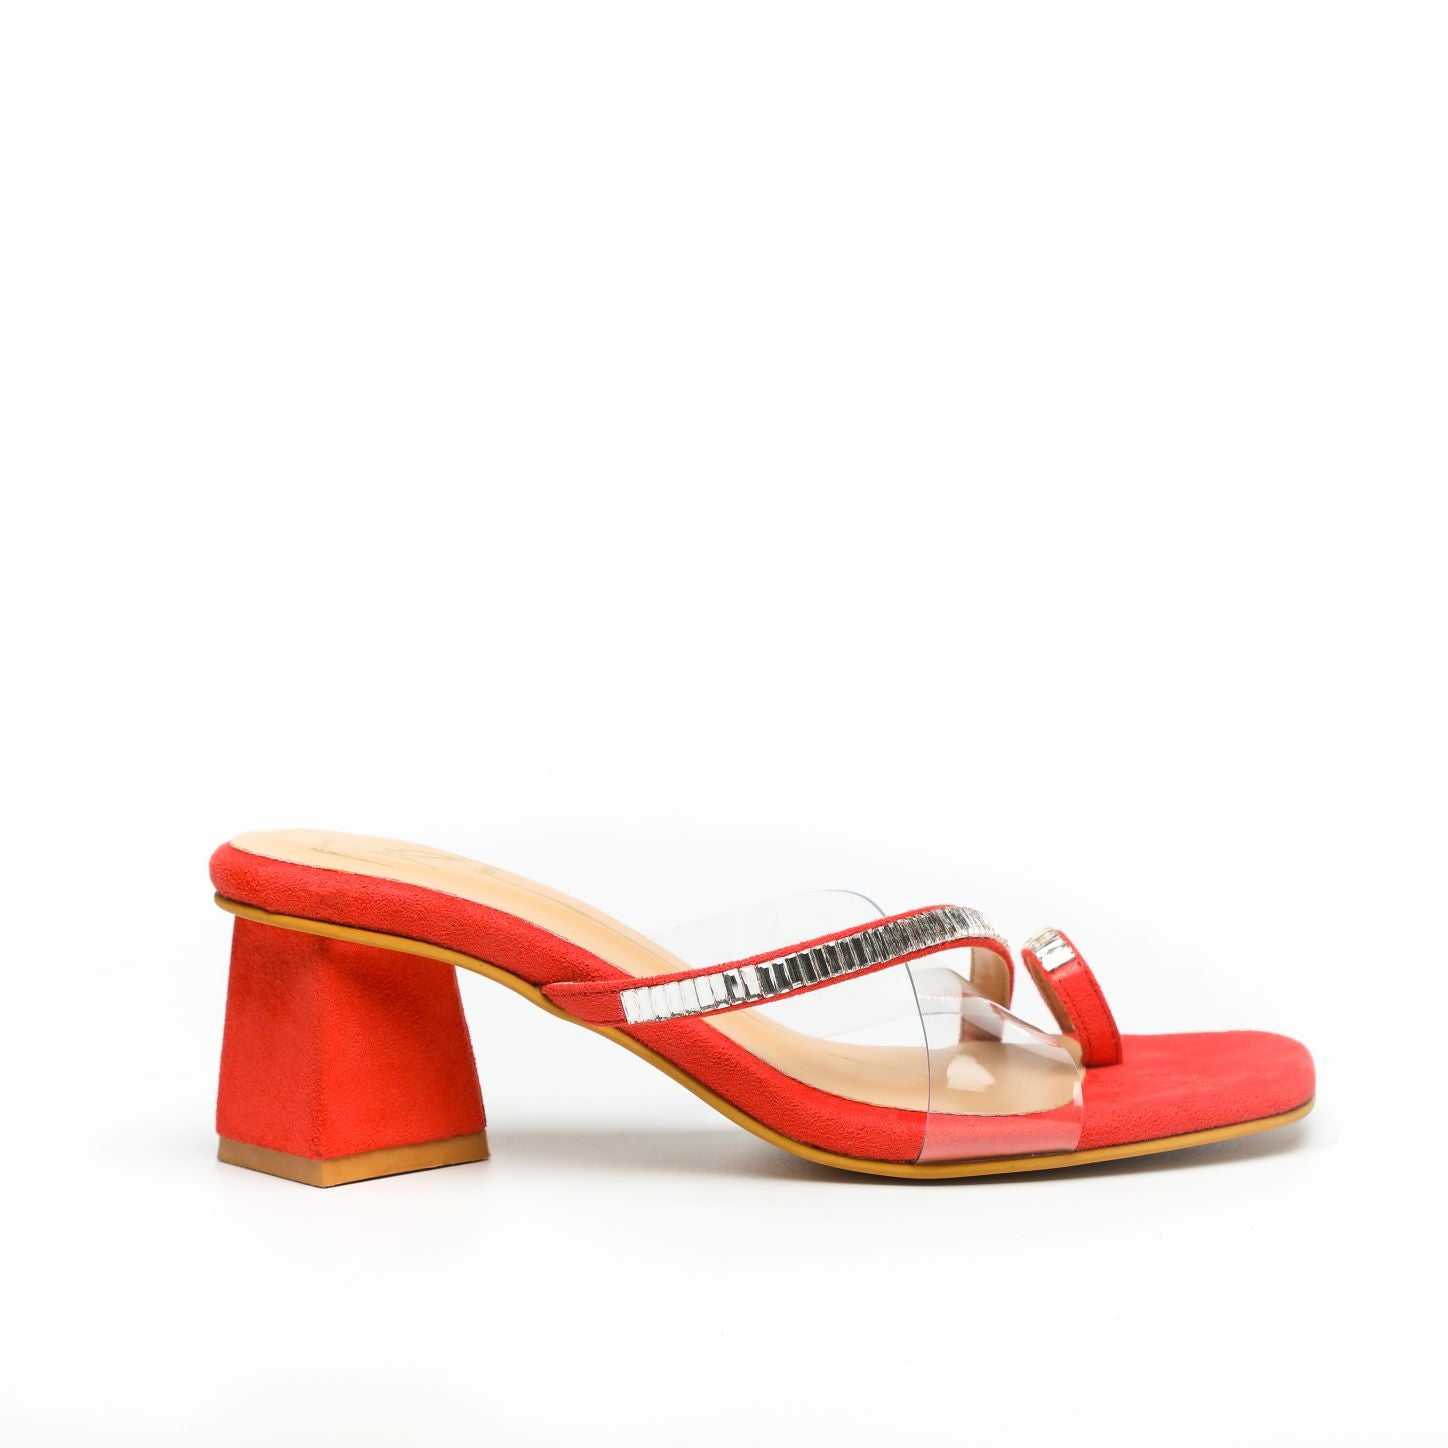 Tao Paris Women red open toe heels, has regular styling, ankle loop de